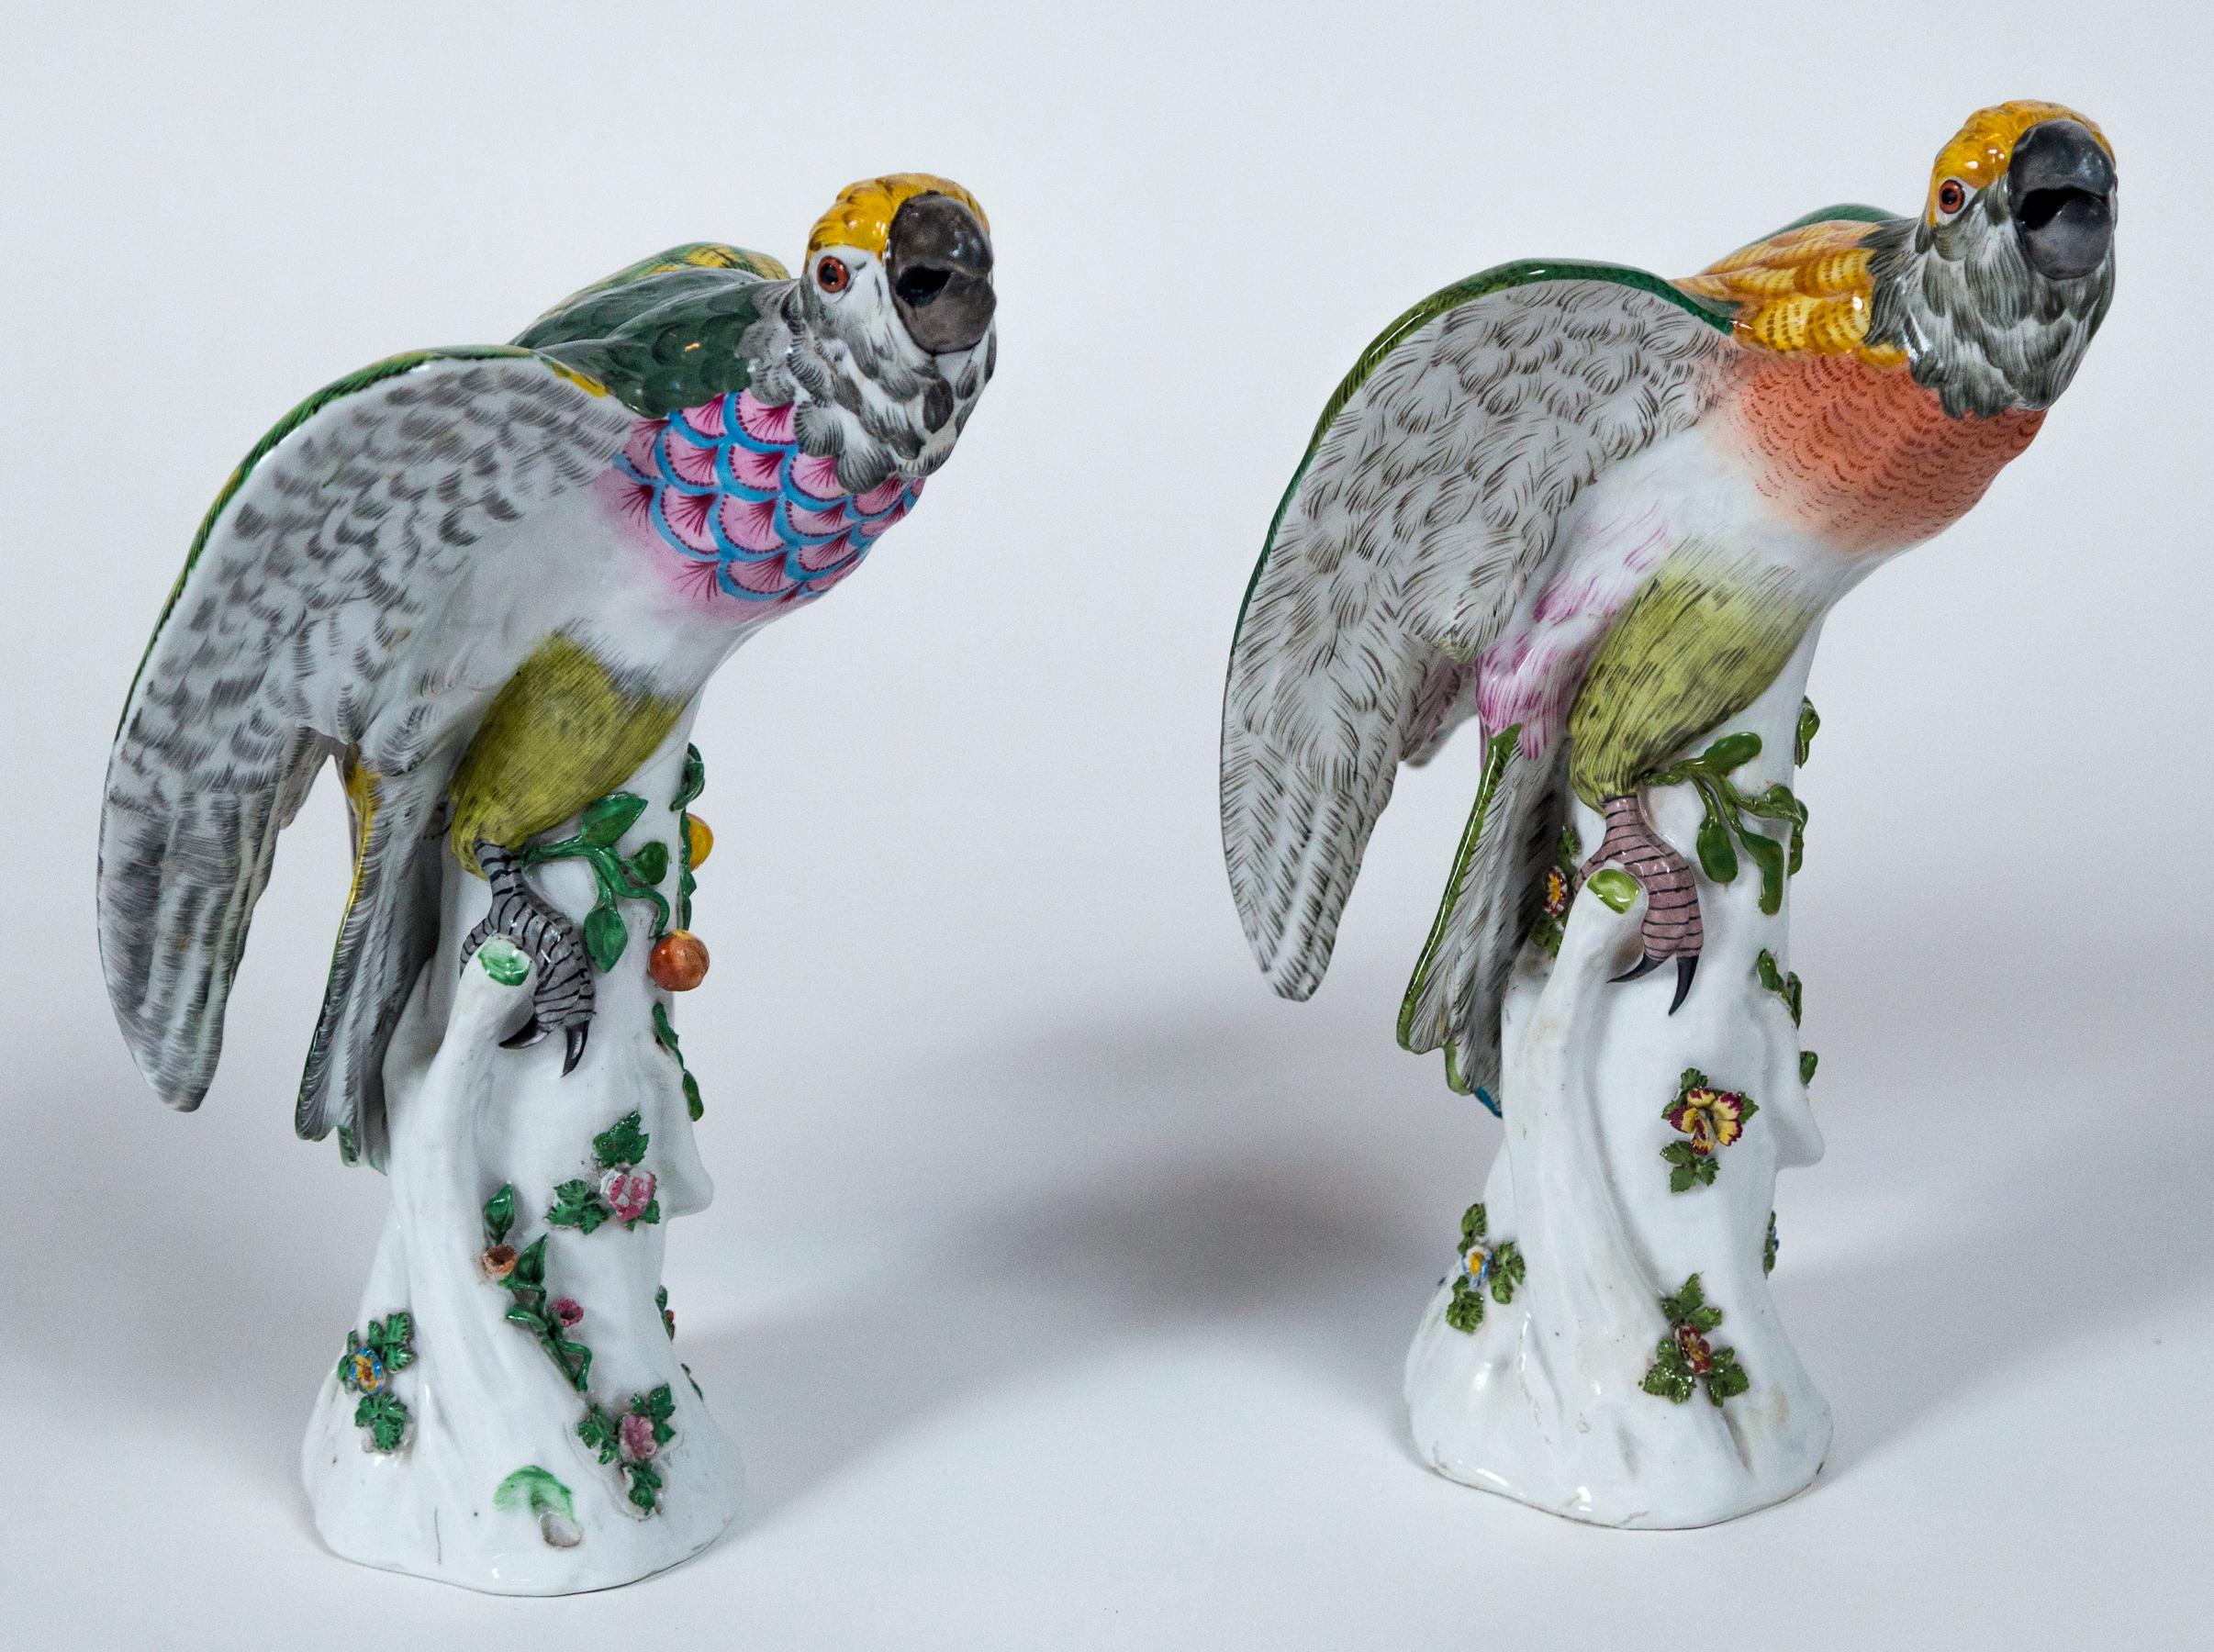 Paire de perroquets en porcelaine européenne vintage. Magnifiquement détaillé avec des glaçures colorées. Des perroquets sont perchés sur des troncs d'arbre avec des motifs floraux appliqués.